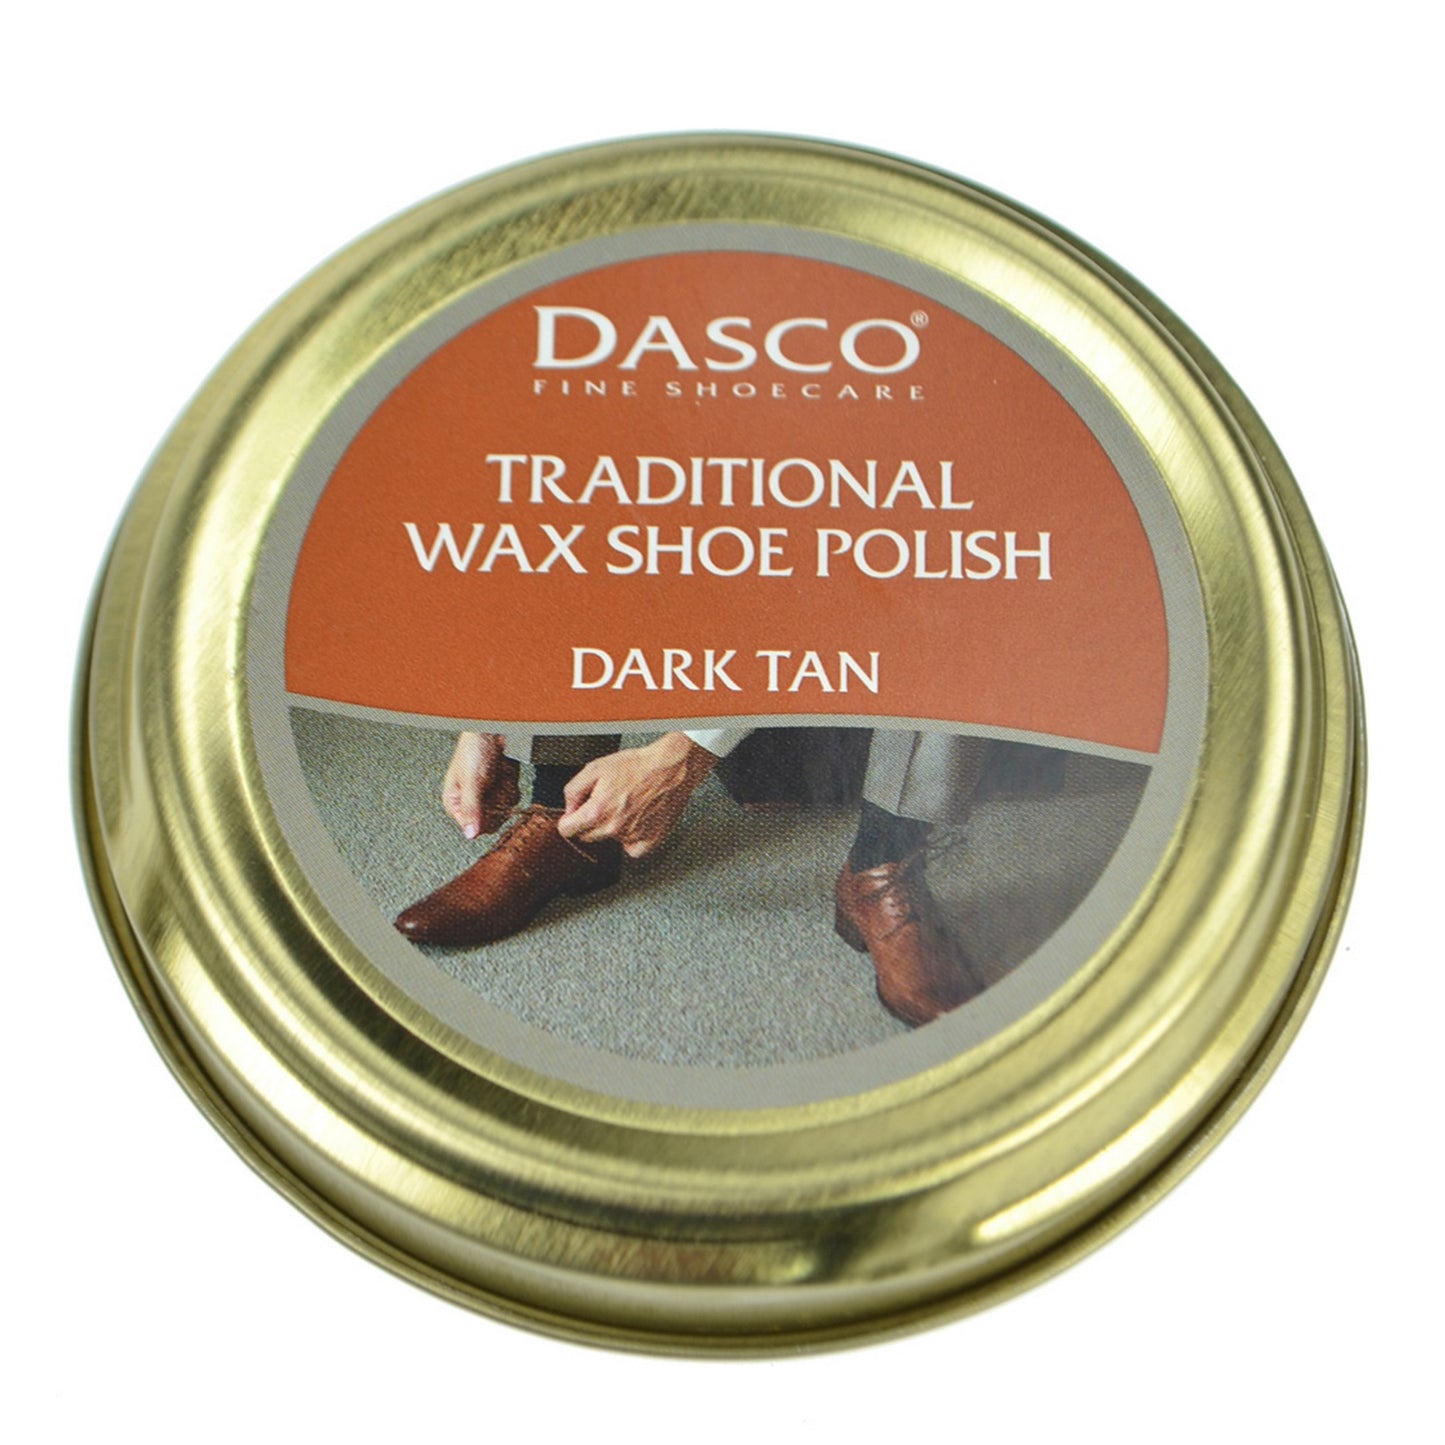 Dasco Wax Shoe Polish - Dark Tan No. 118